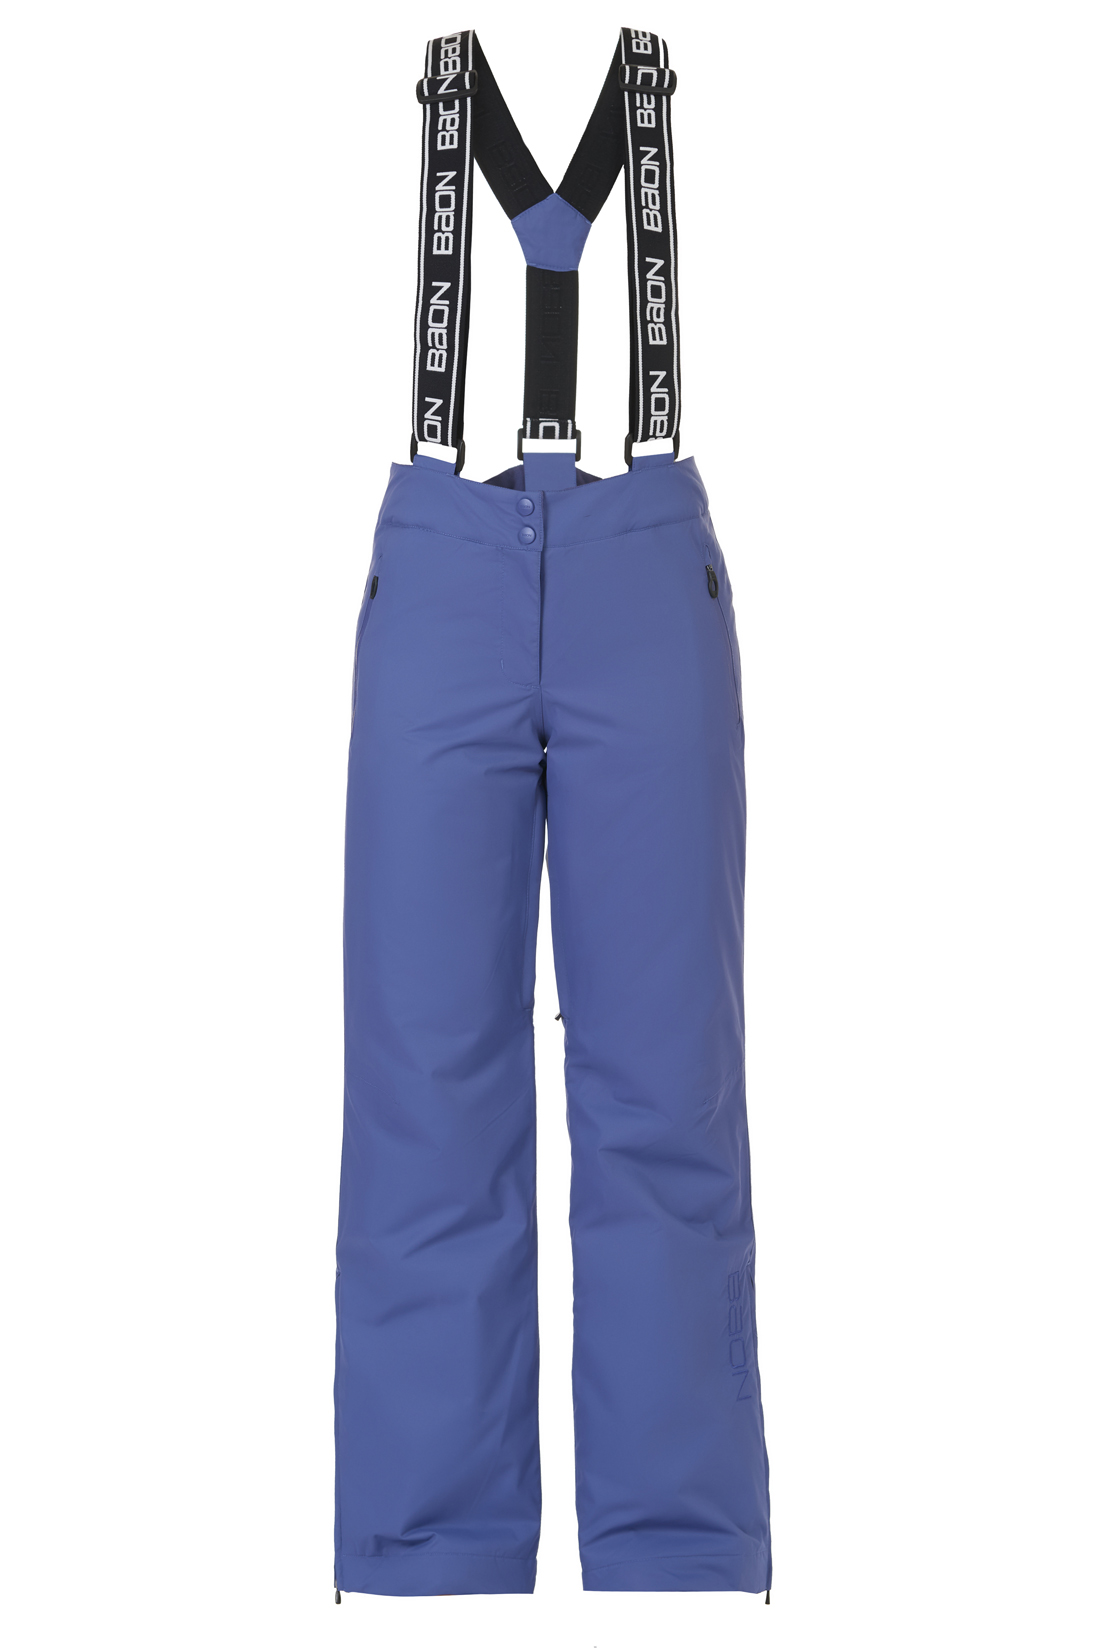 Горнолыжные брюки с клапанами на поясе (арт. baon B297905), размер XL, цвет фиолетовый Горнолыжные брюки с клапанами на поясе (арт. baon B297905) - фото 3